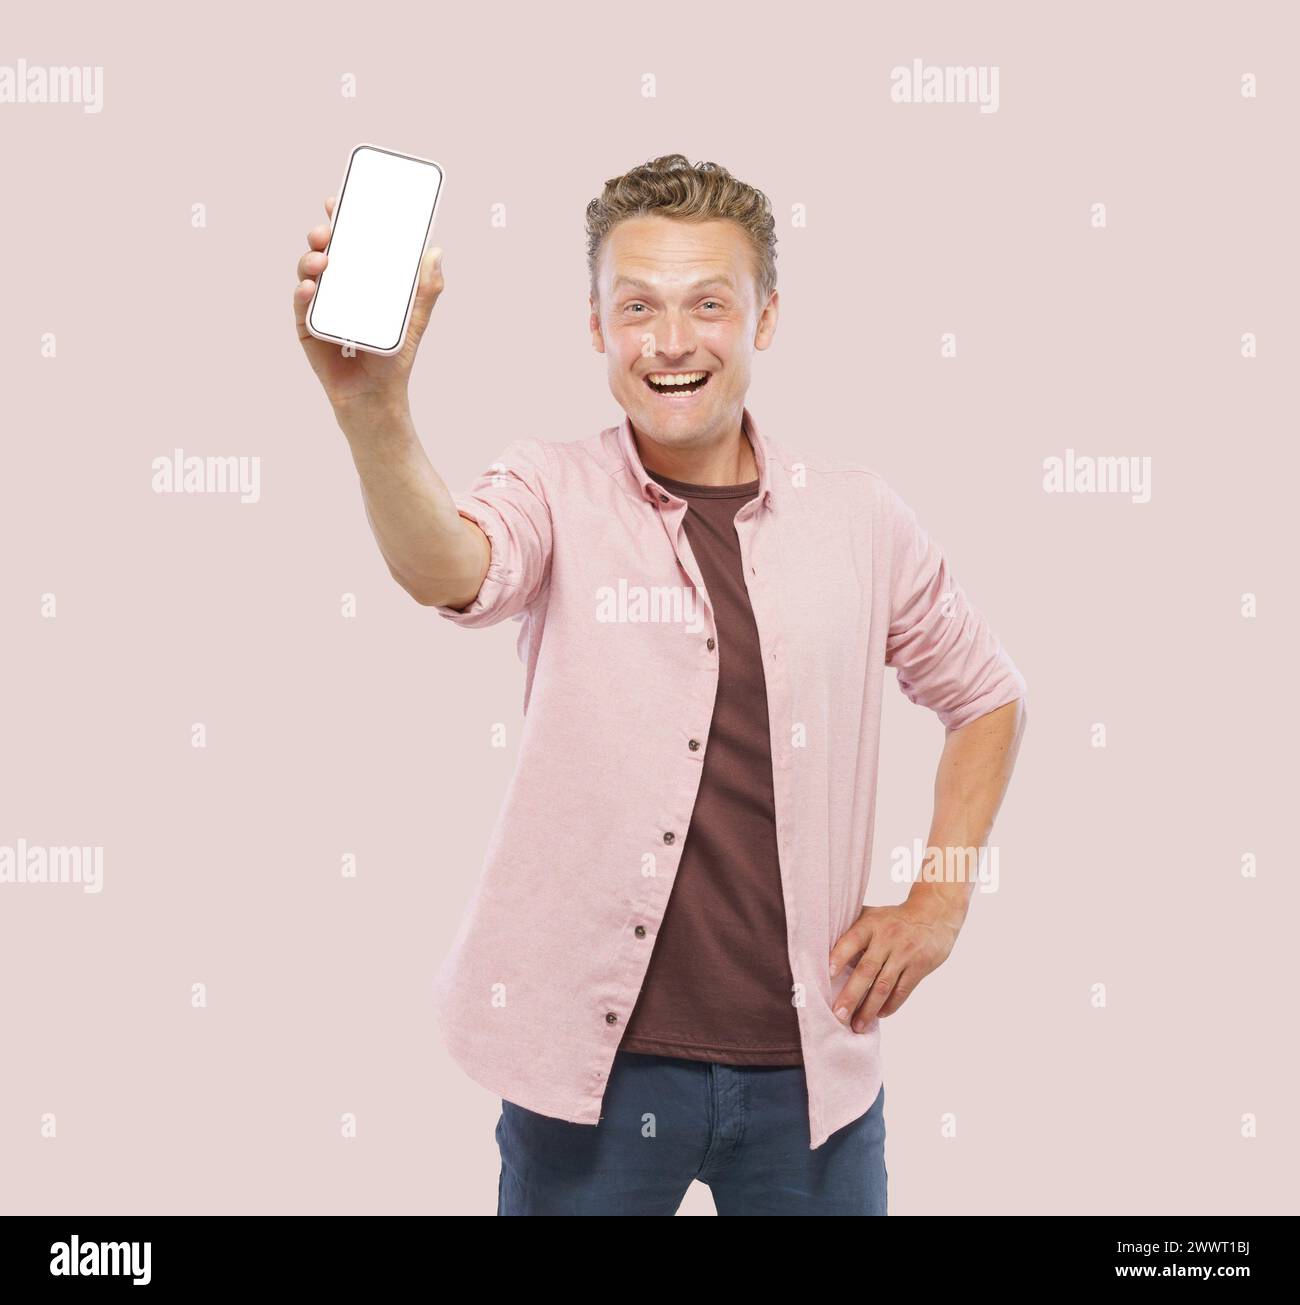 Un uomo ha in mano un cellulare bianco e sorride. Concetto di felicità ed eccitazione, come l'uomo sta potendo con il telefono, forse a Sha Foto Stock